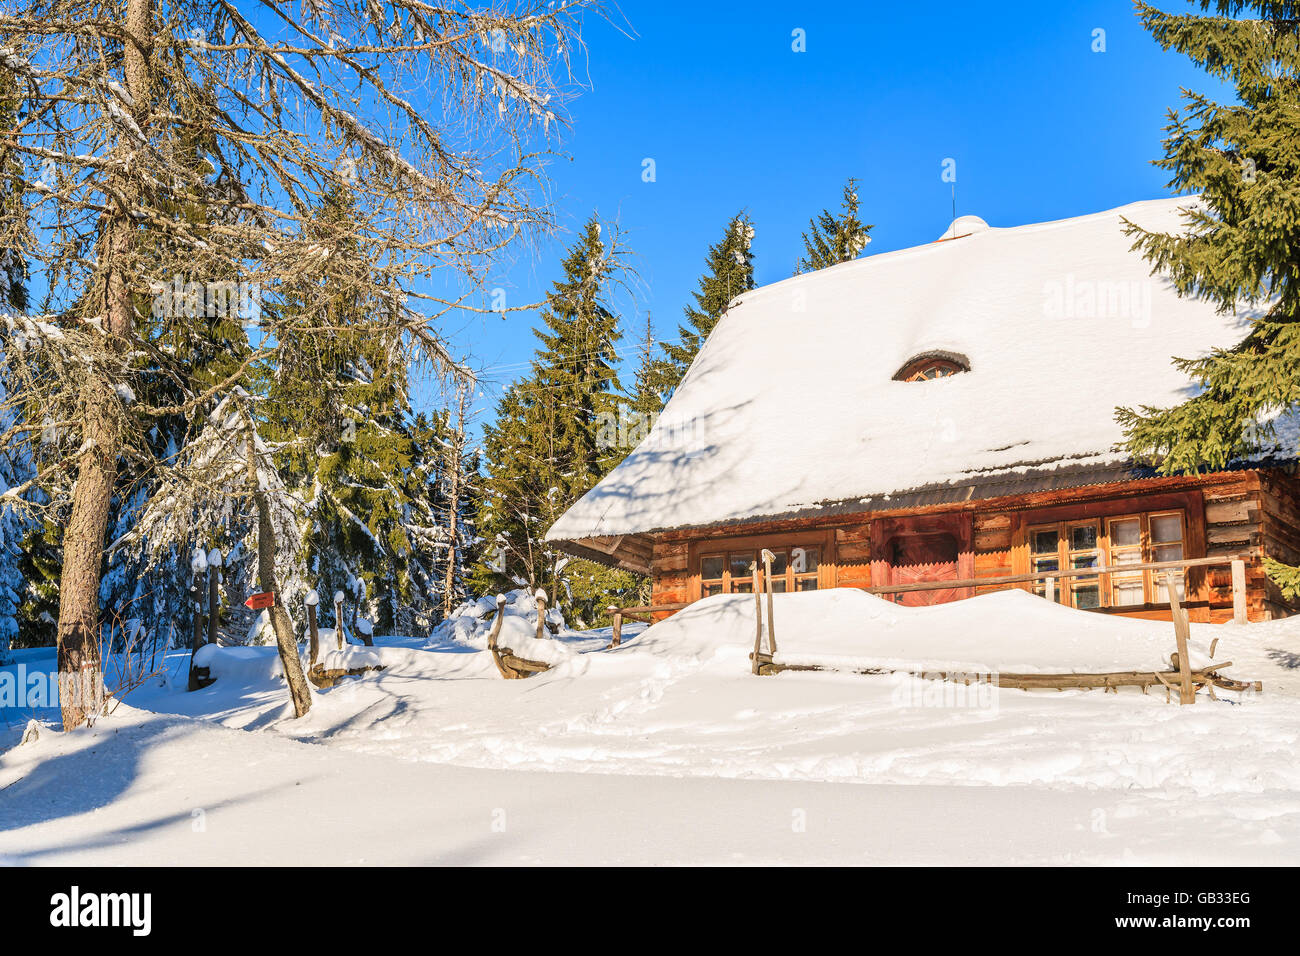 Cabane en bois en forêt en hiver paysage de montagnes Gorce, Pologne Banque D'Images